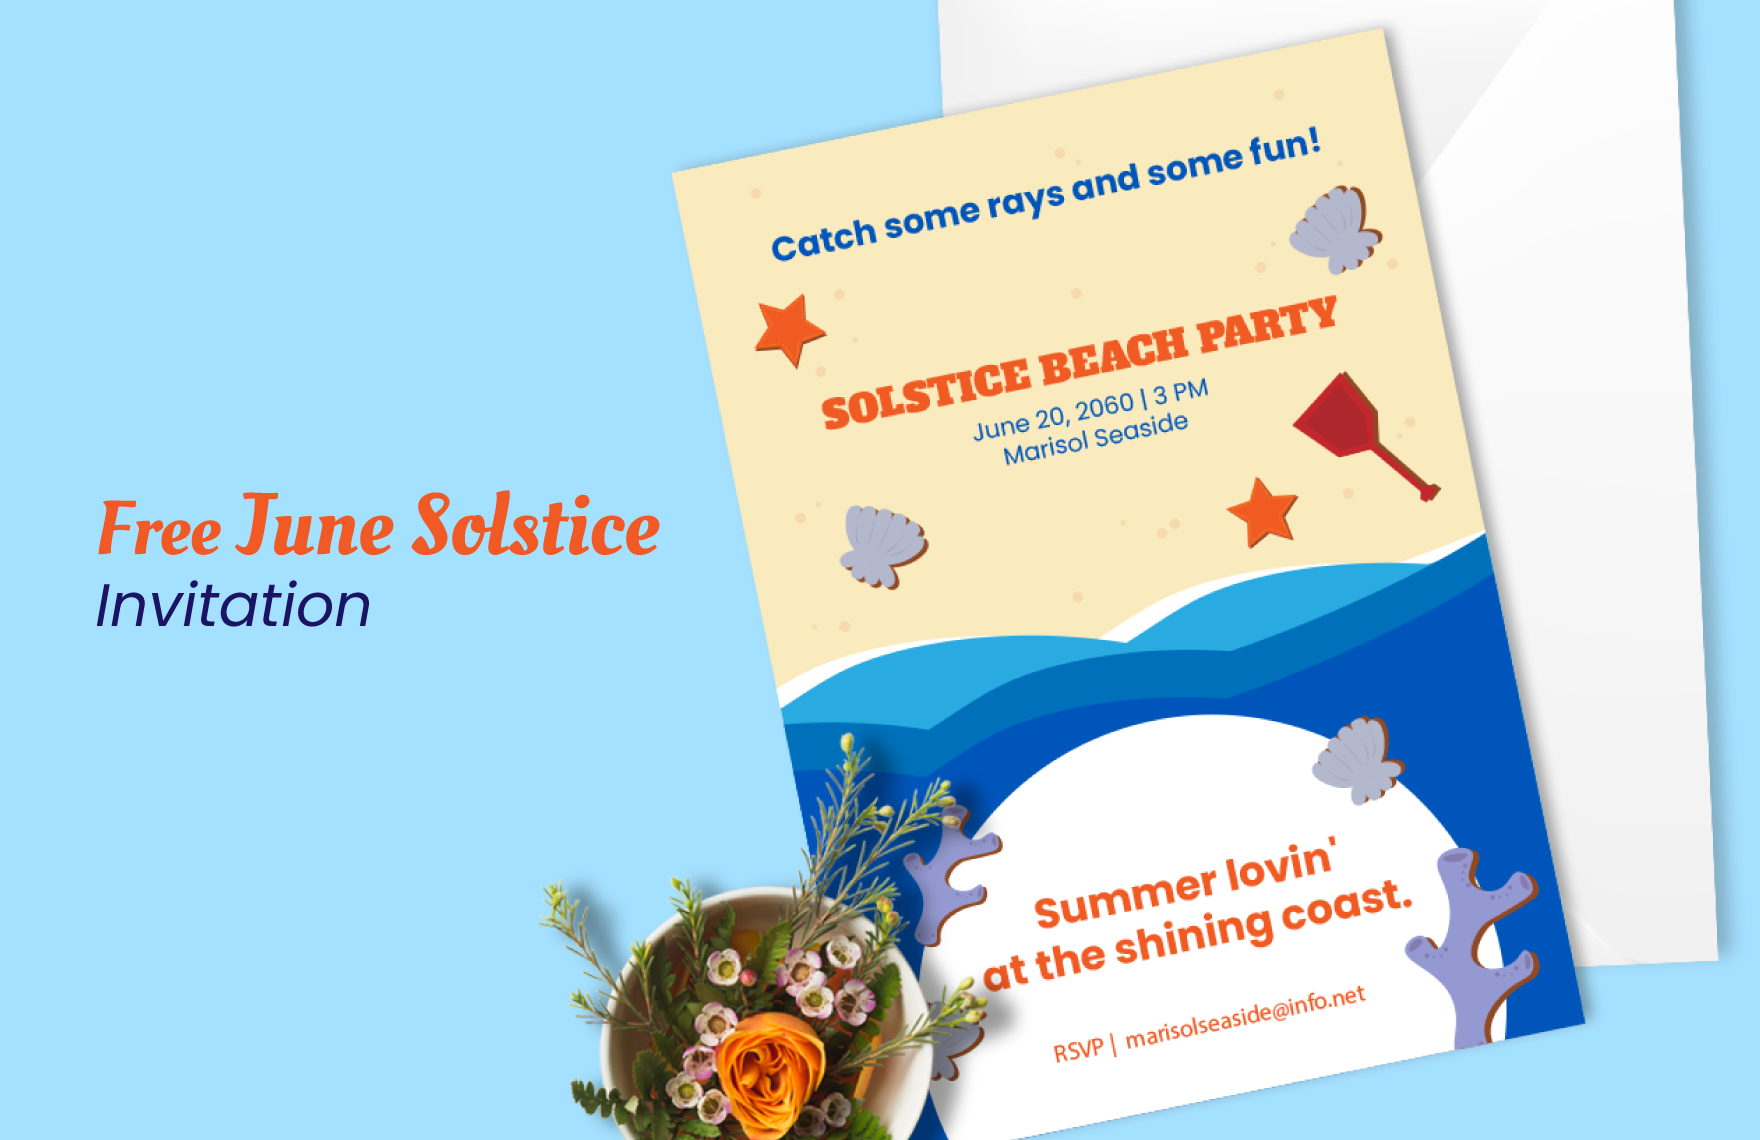 Free June Solstice Invitation